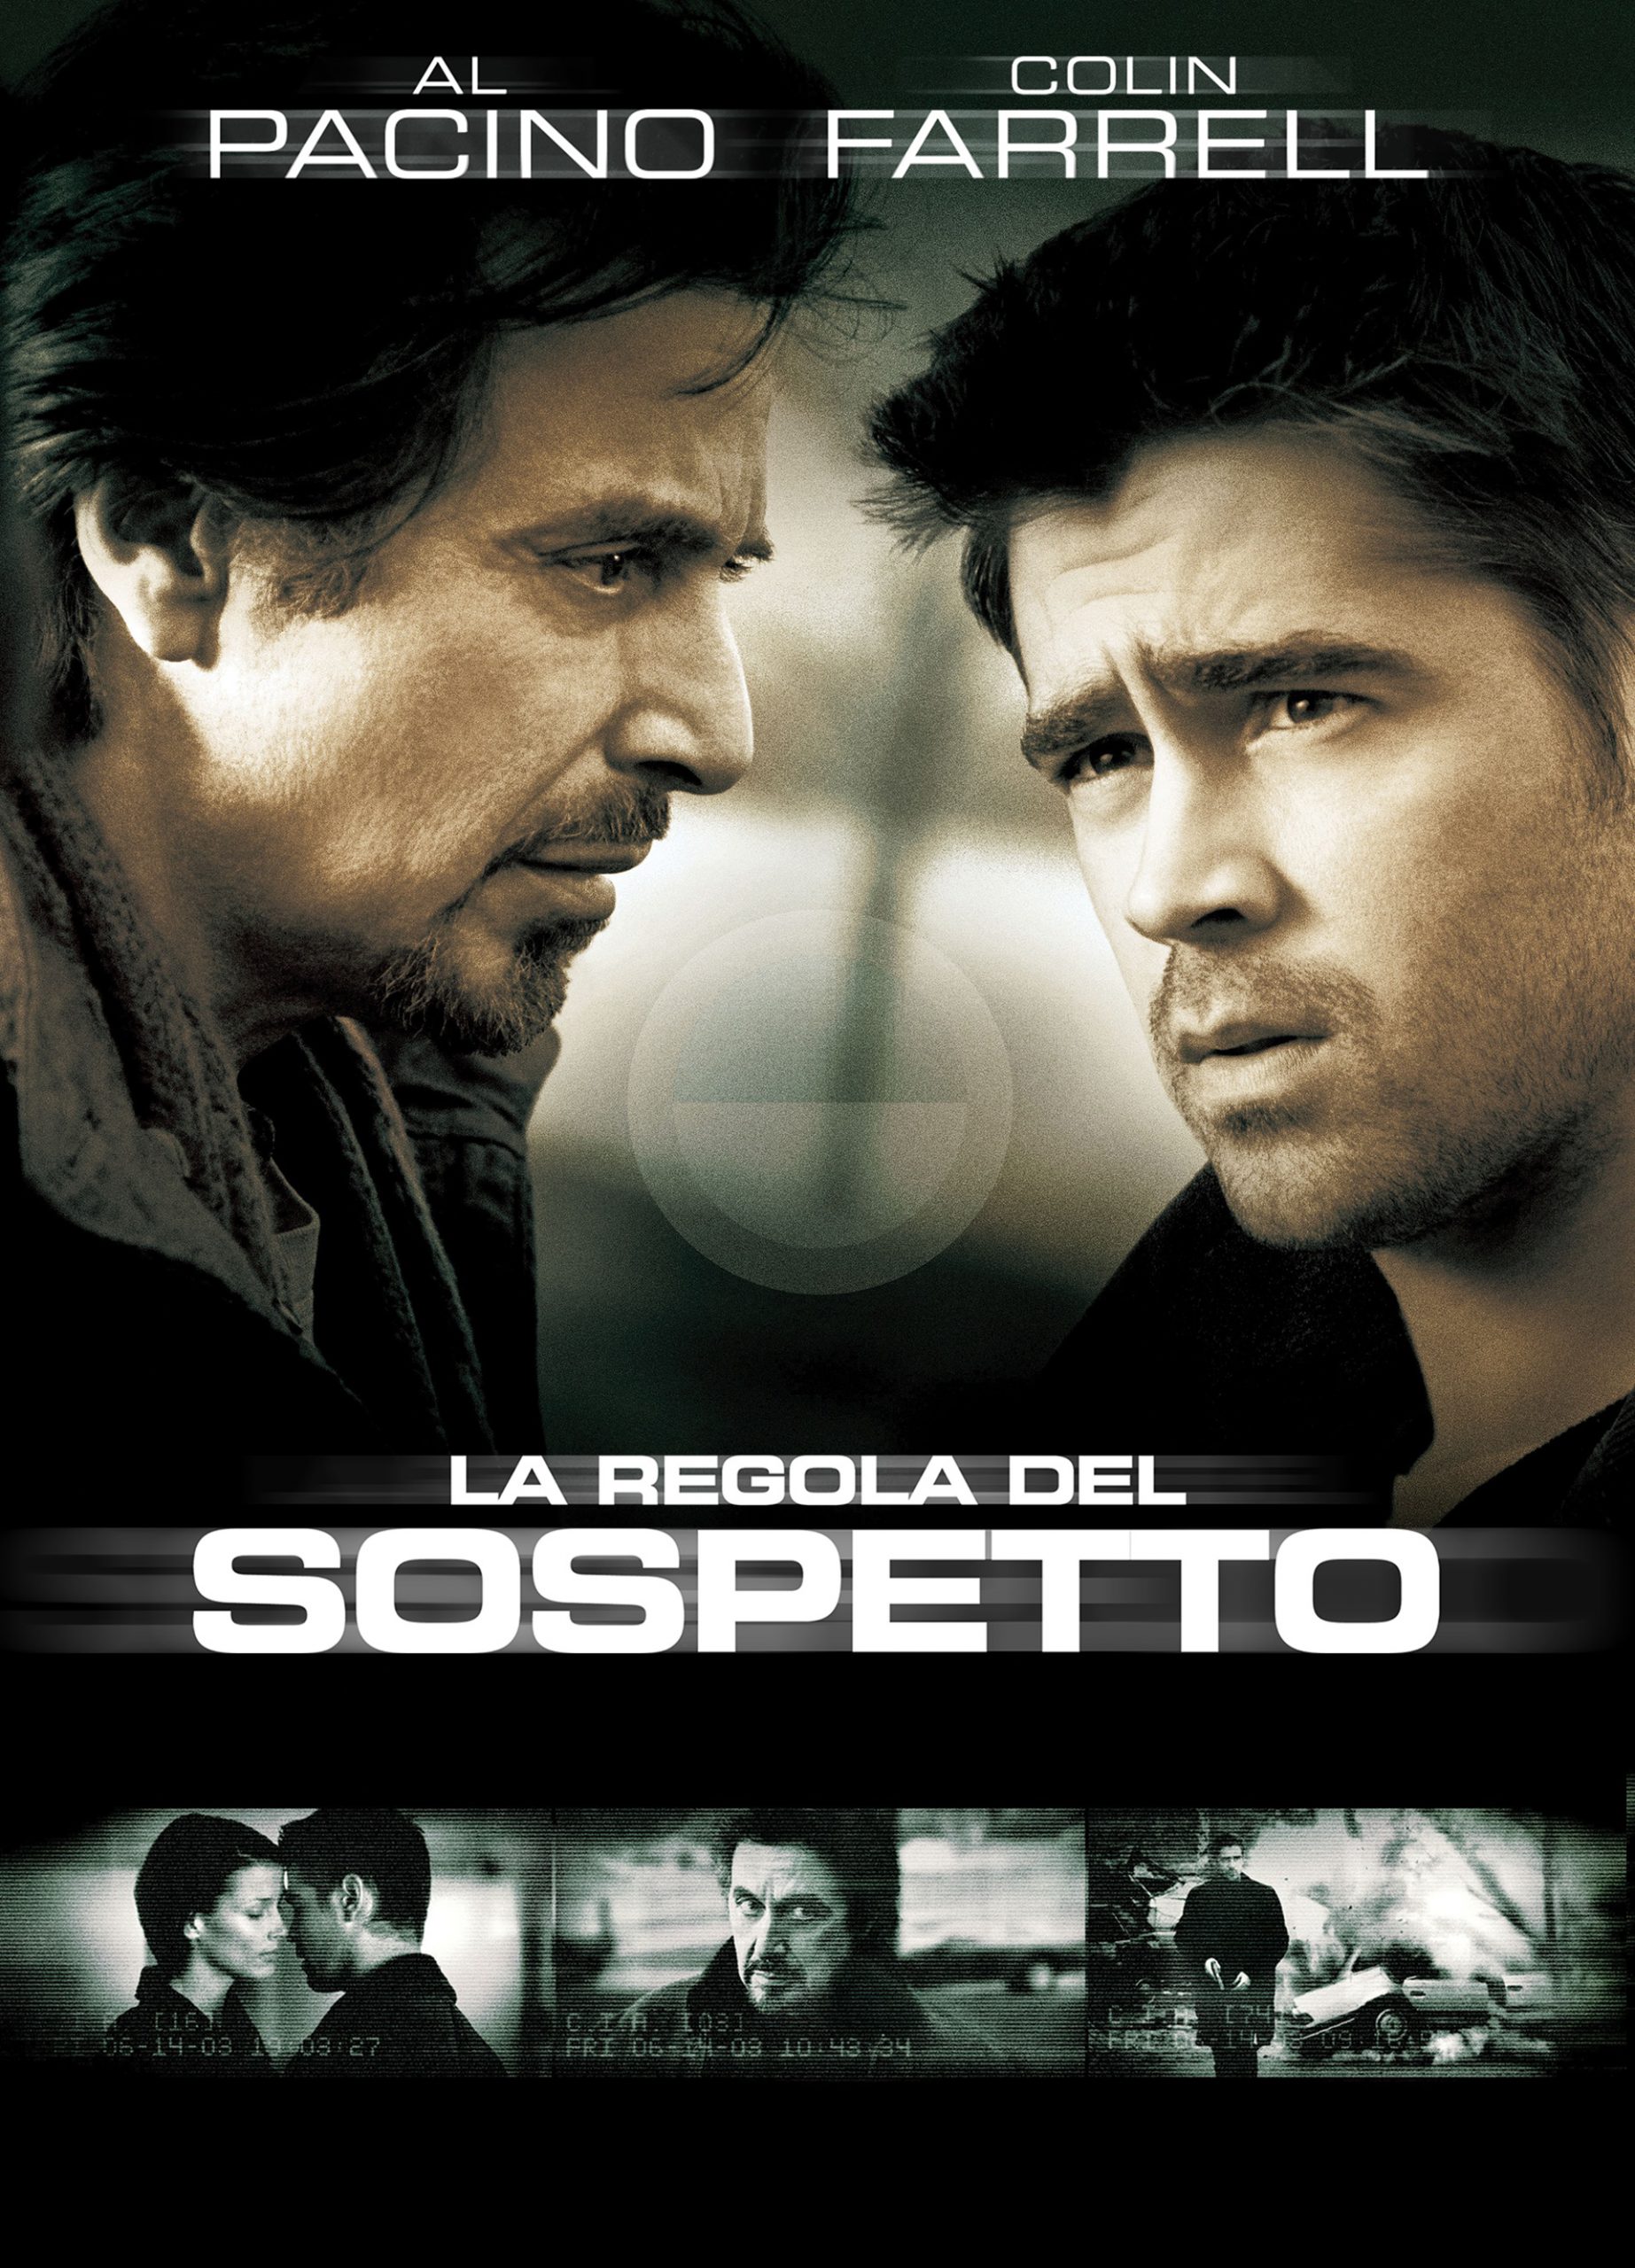 La regola del sospetto [HD] (2003)